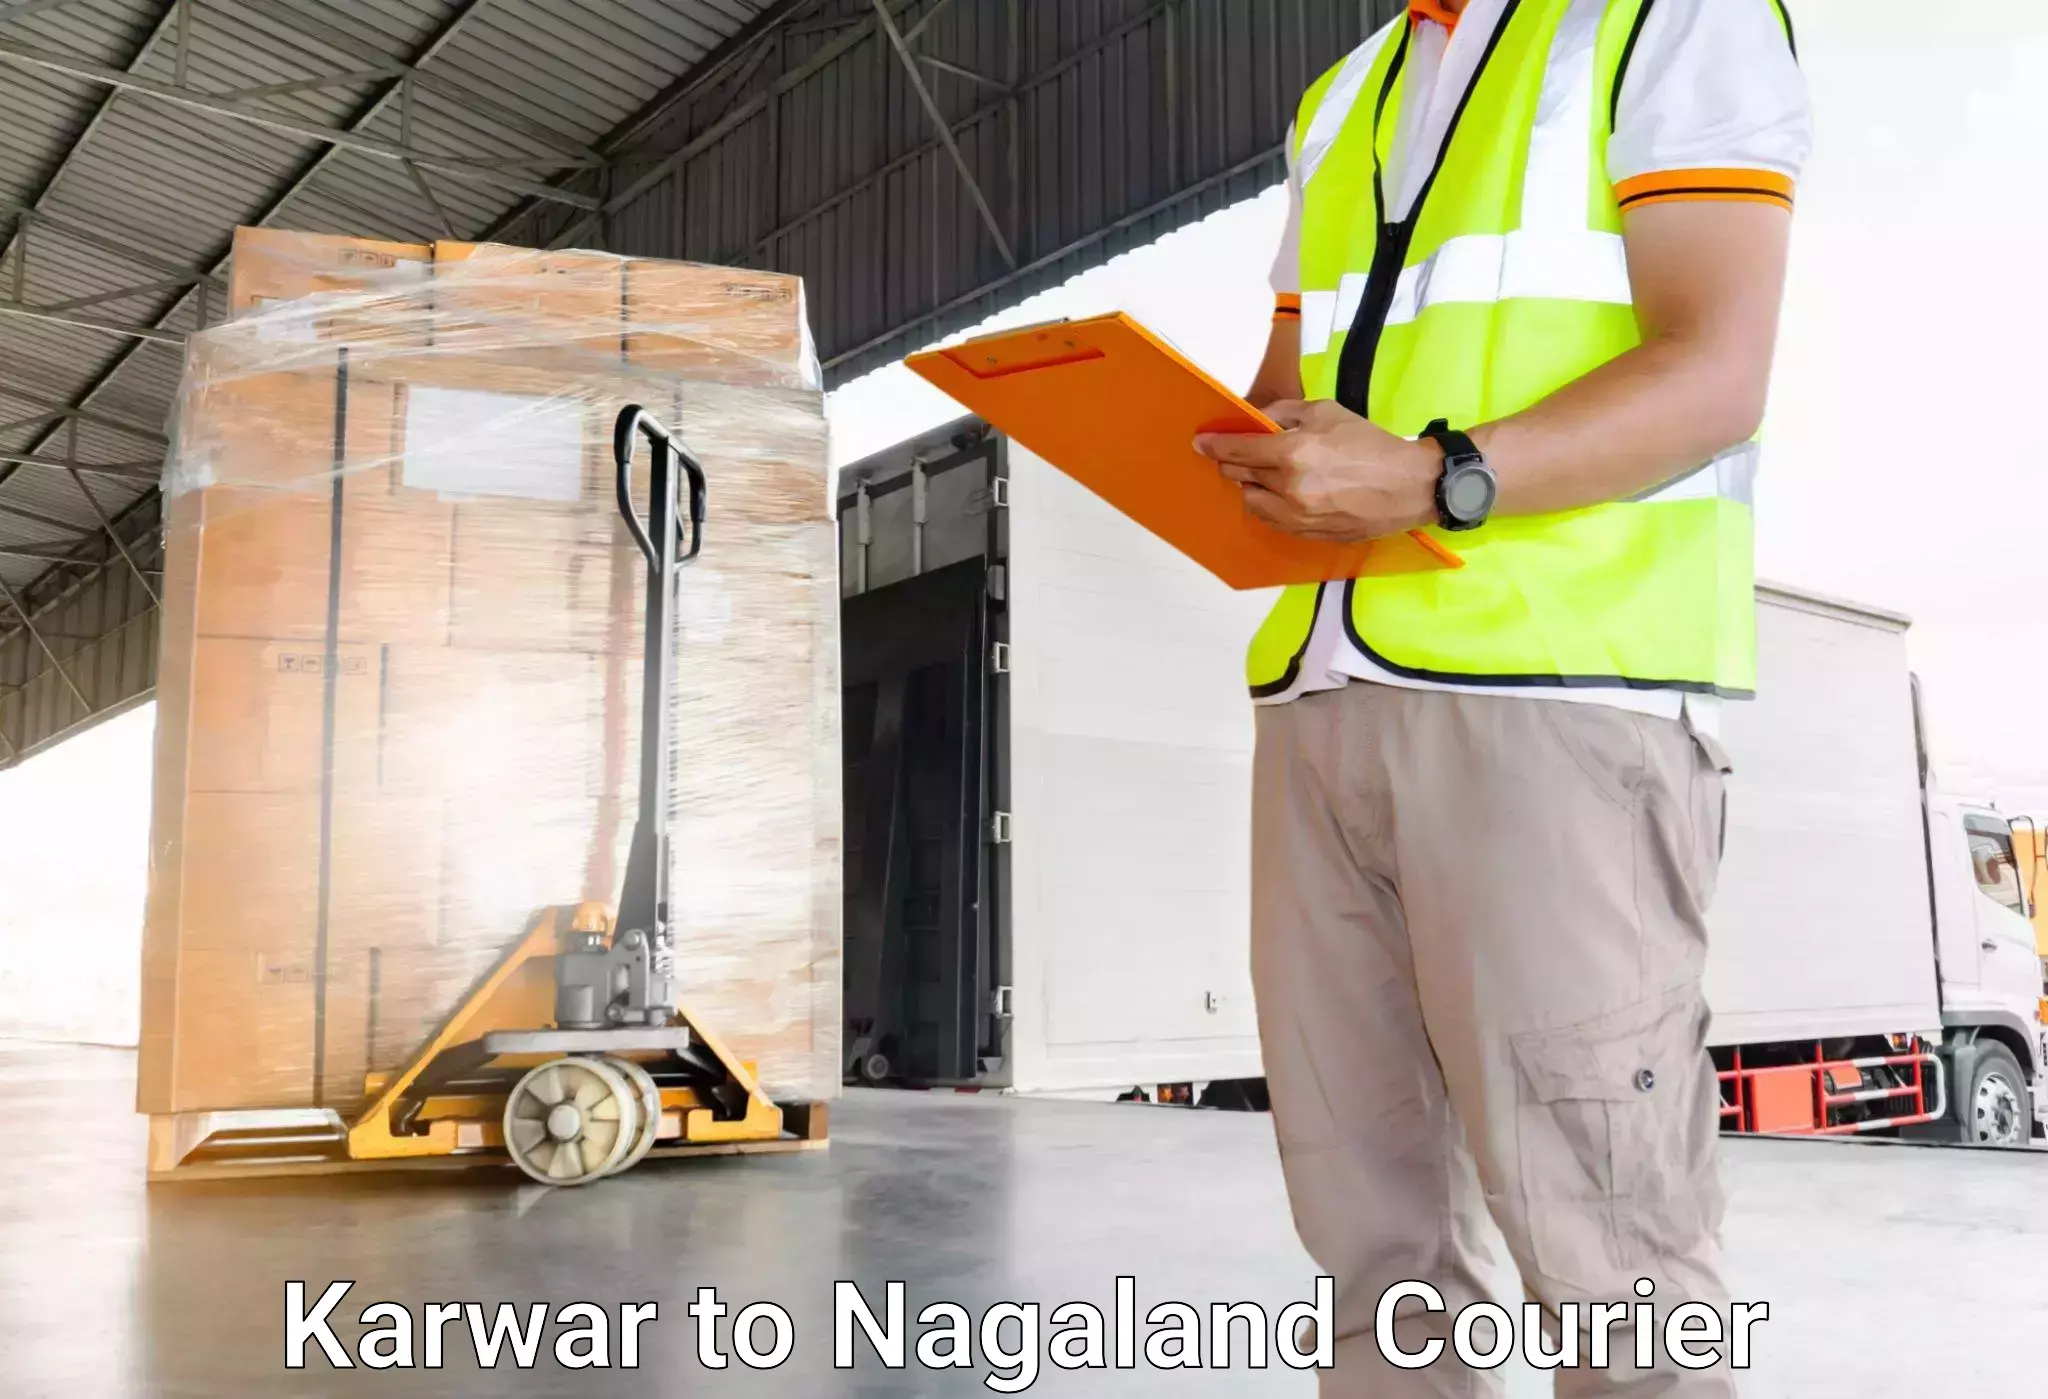 Automated luggage transport Karwar to Nagaland